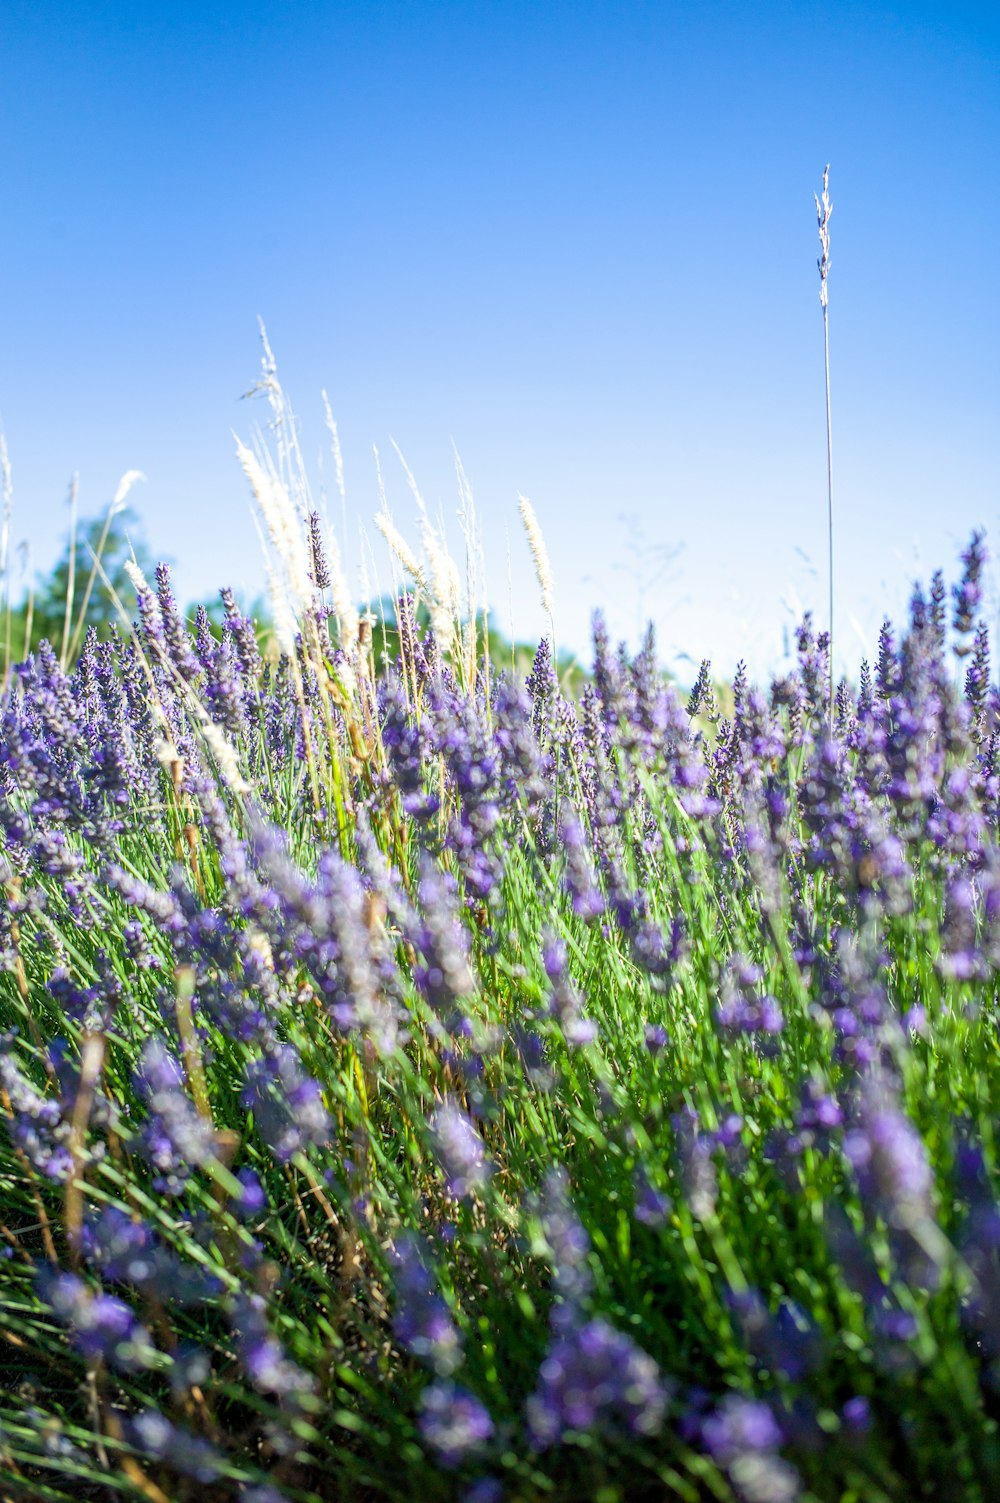 Campo de flores púrpuras bajo el cielo azul durante el día